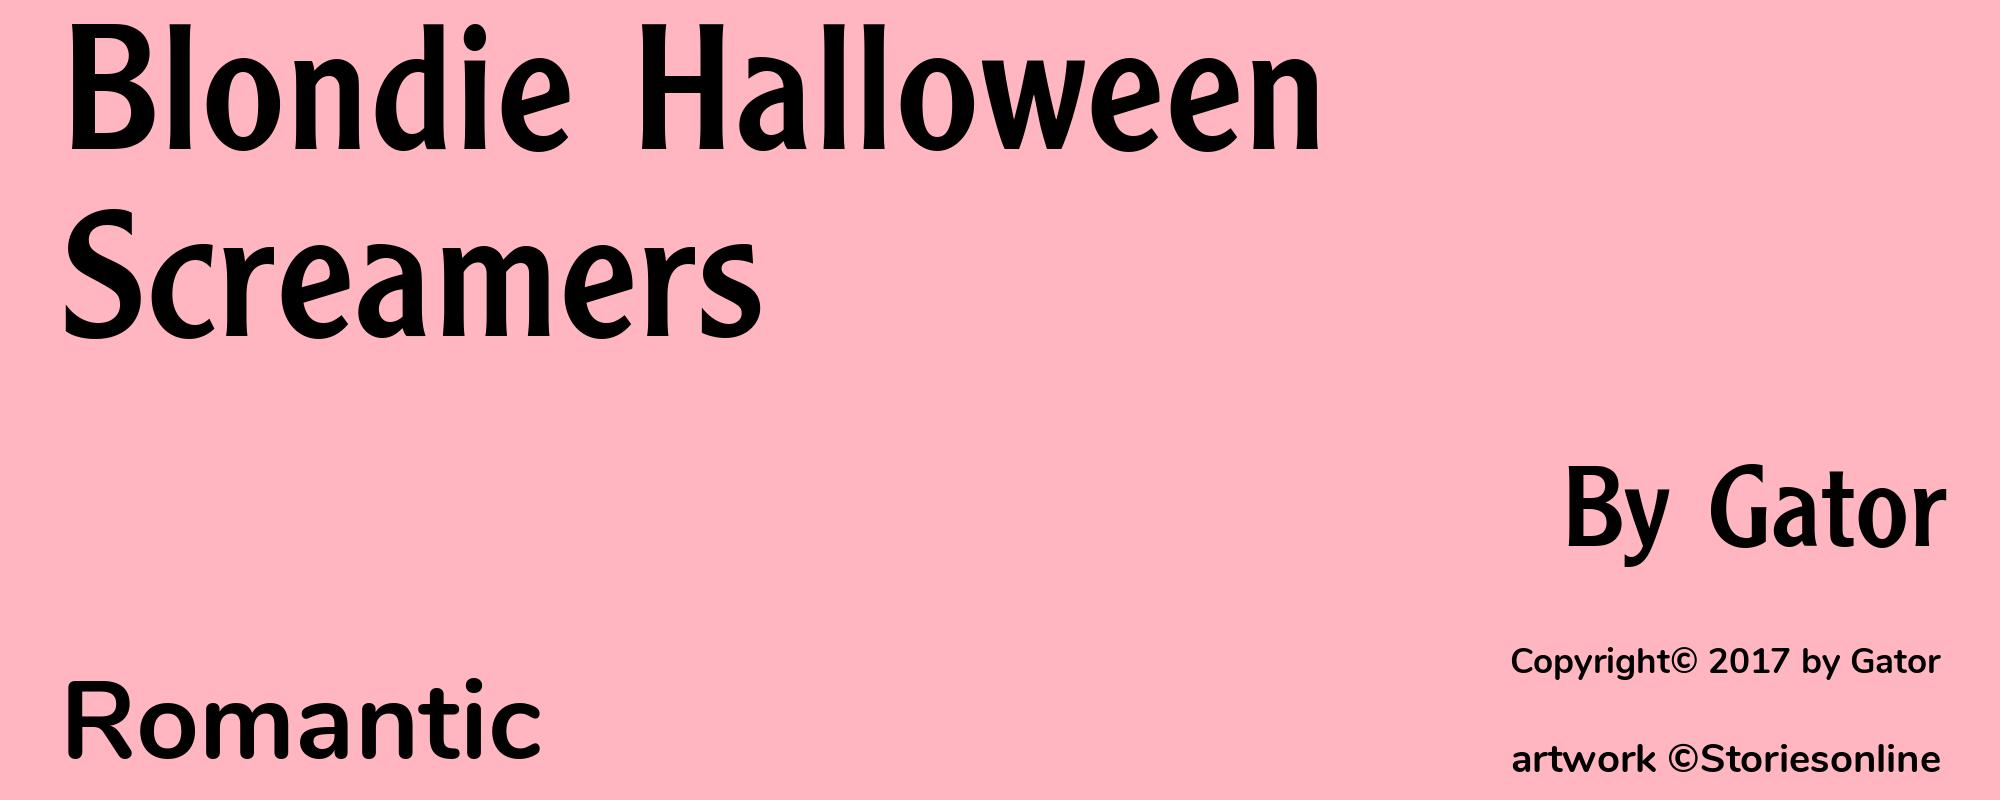 Blondie Halloween Screamers - Cover